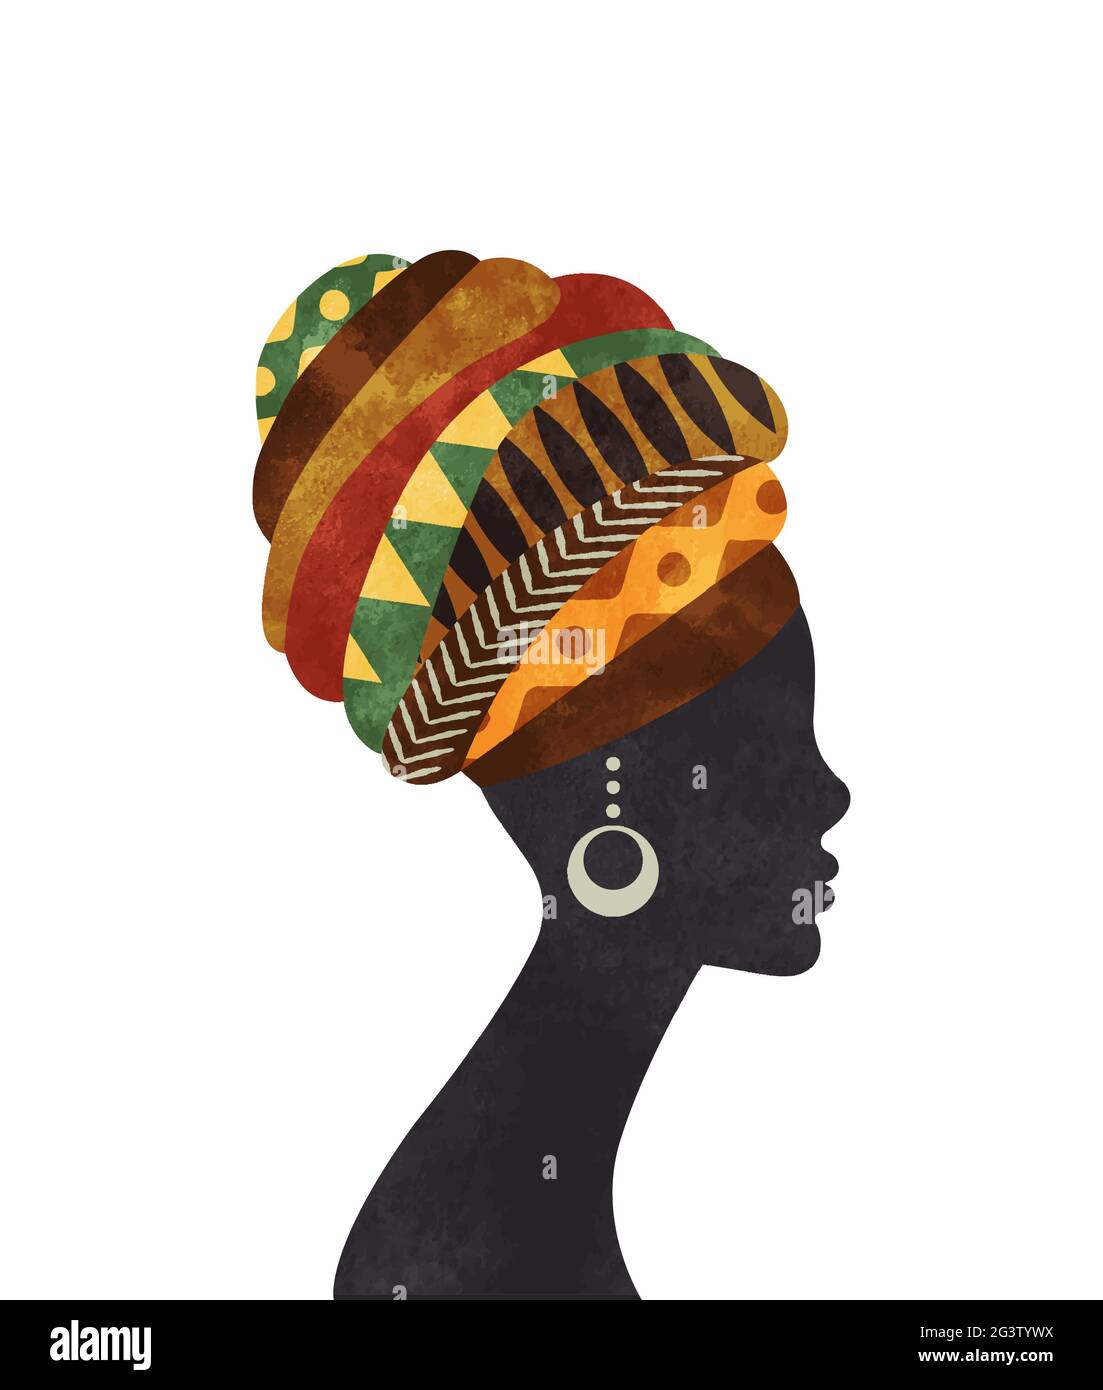 Belle femme de culture africaine avec le turban traditionnel dans la texture de peinture aquarelle. Silhouette de fille africaine noire sur fond isolé. Illustration de Vecteur